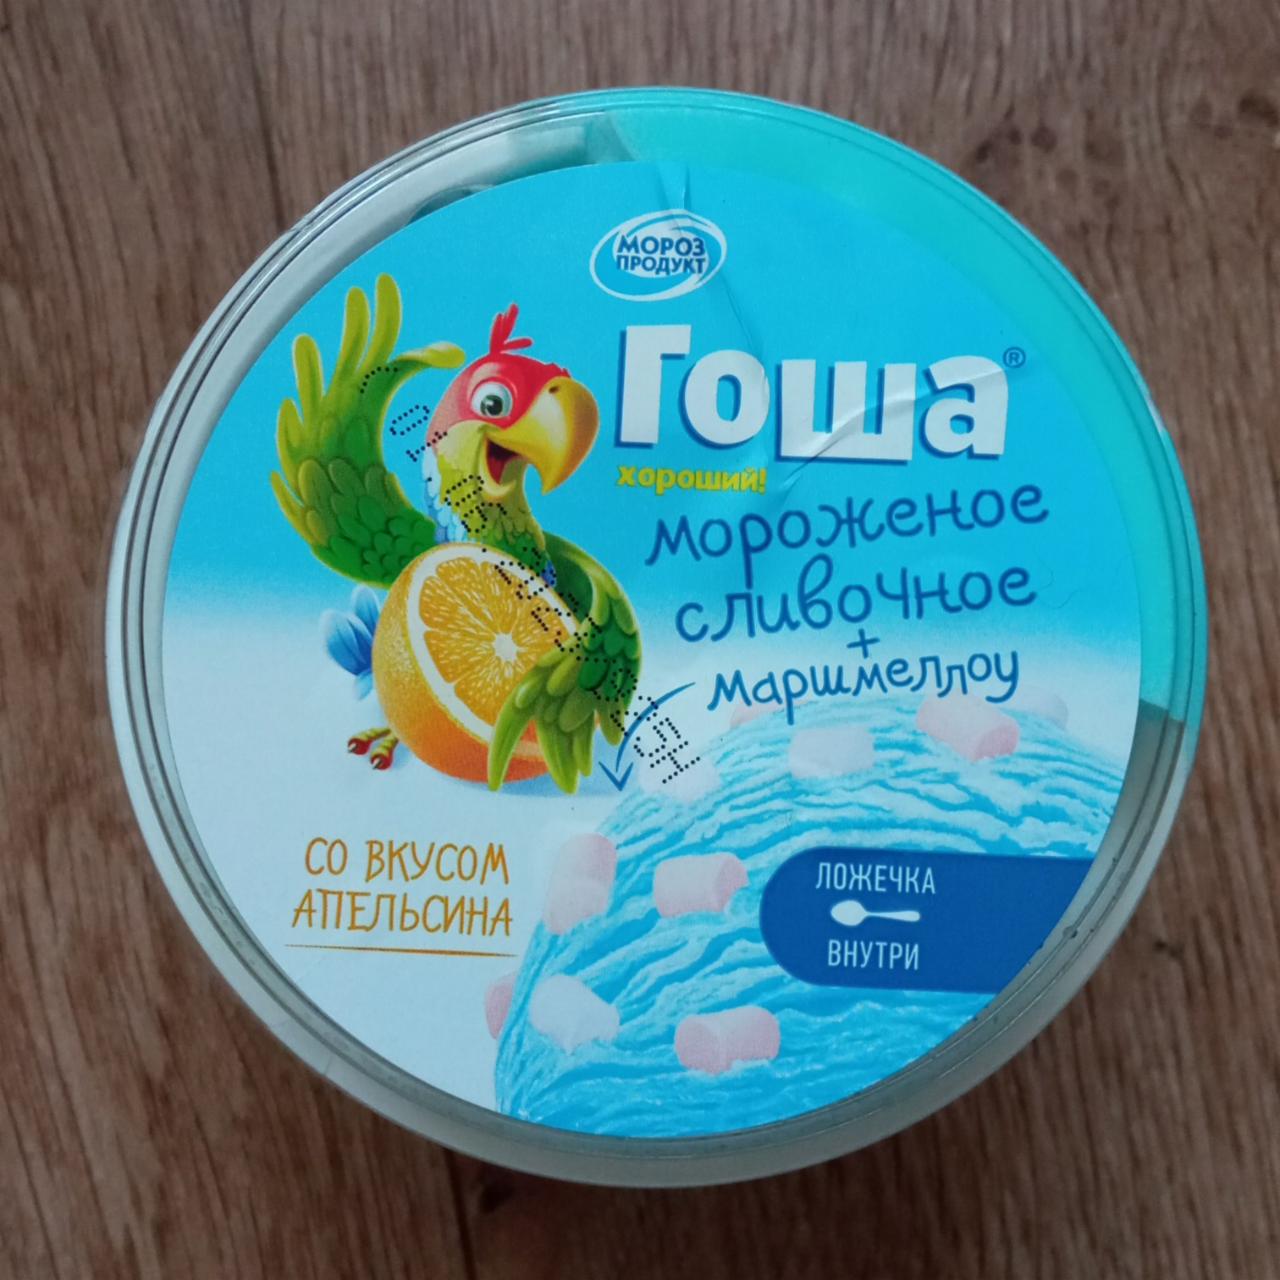 Фото - мороженое со вкусом апельсина мороженого словочное + маршмеллоу Гоша Морозпродукт